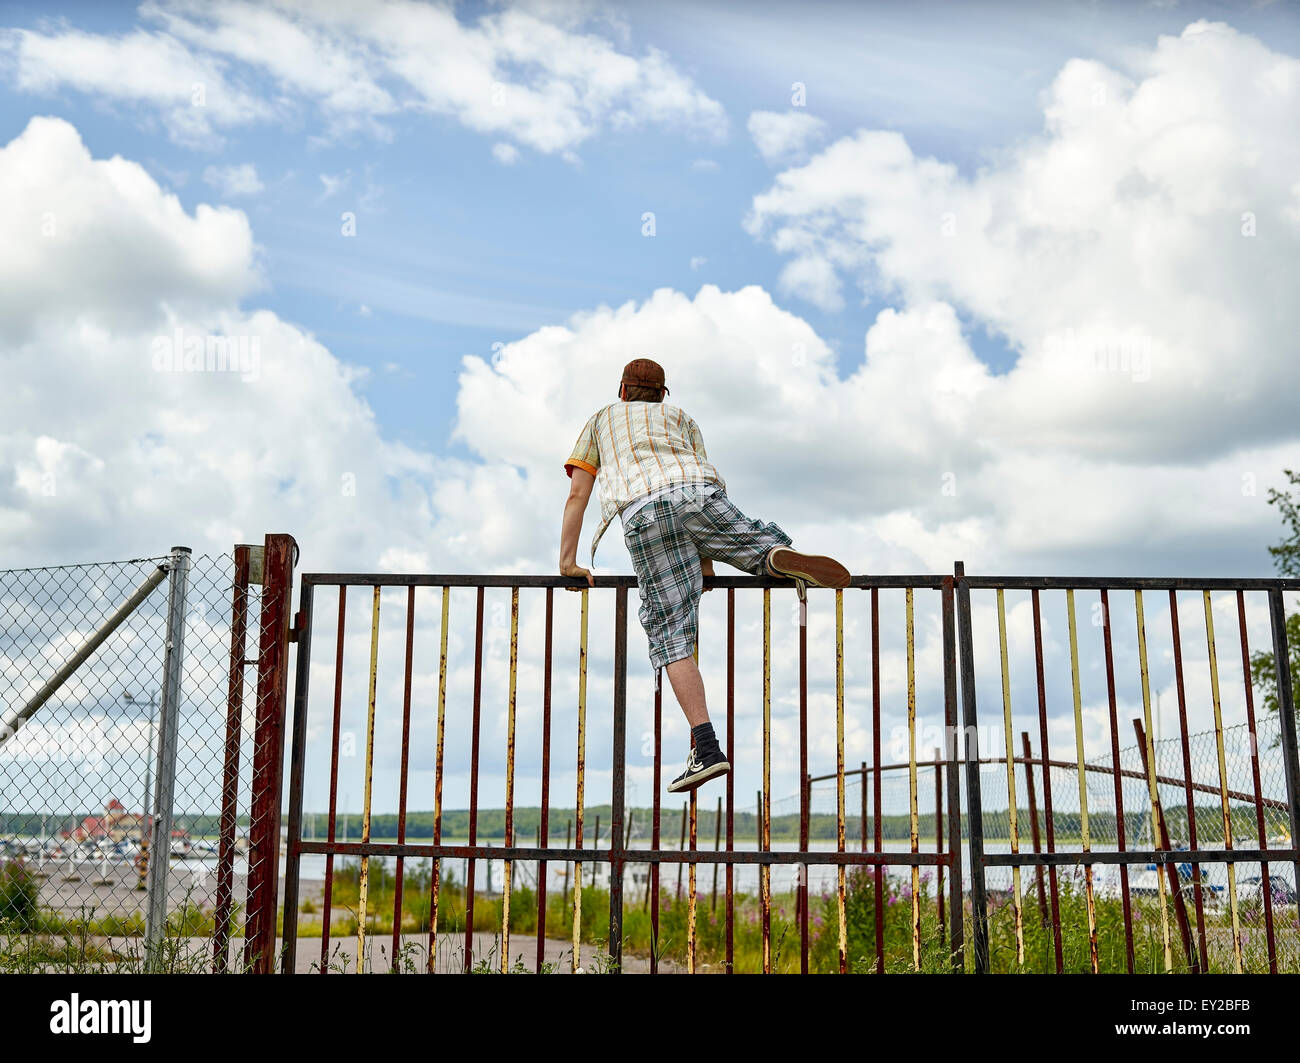 Les jeunes adultes de sexe masculin atteint la clôture, ciel couvert sur l'arrière-plan Banque D'Images